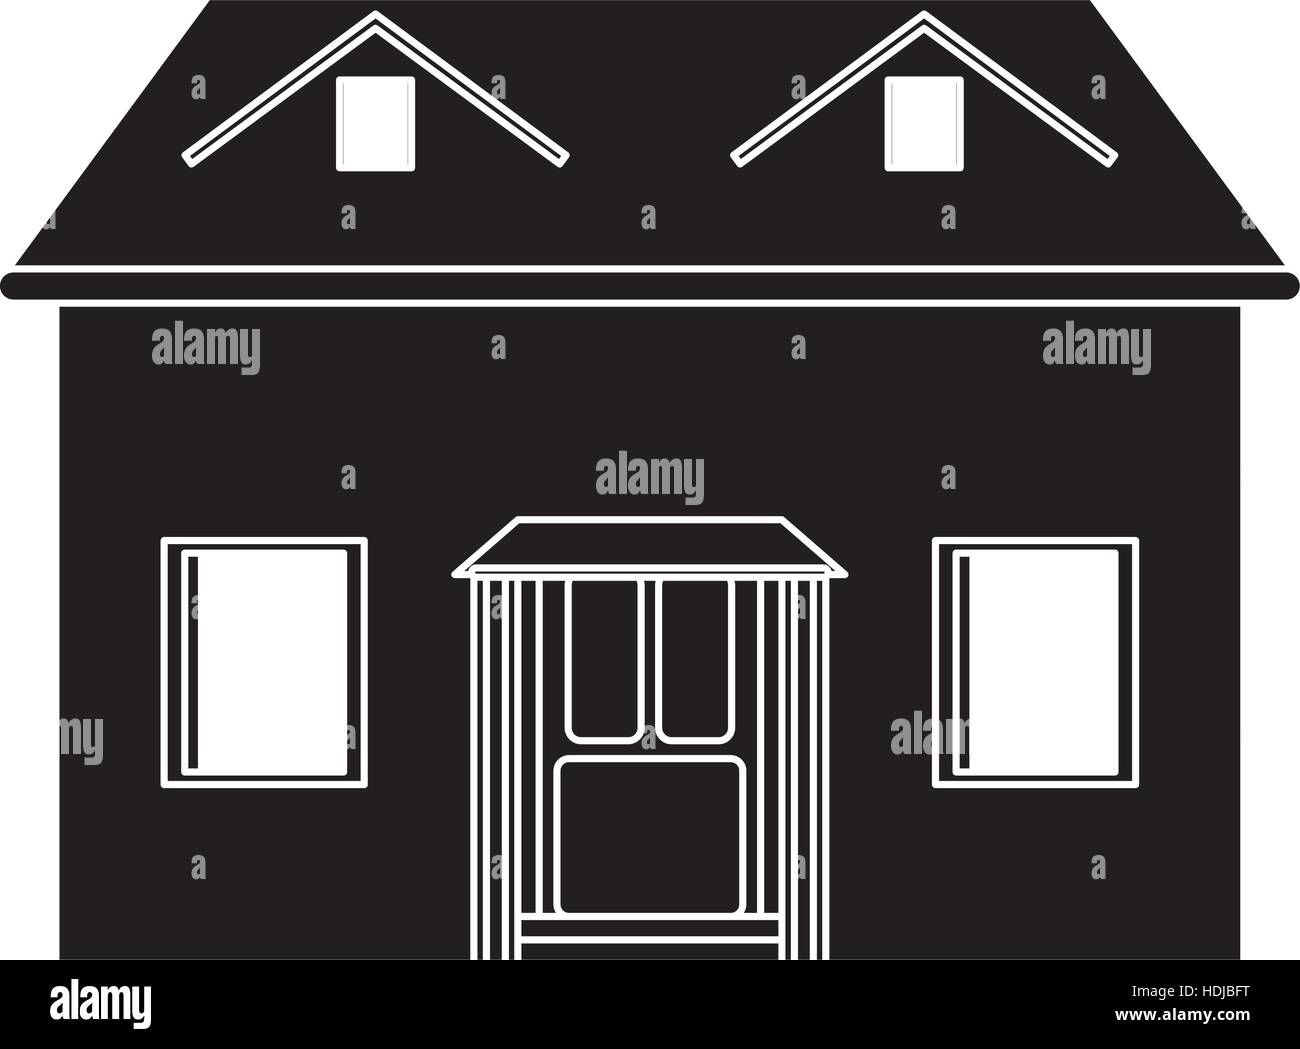 house facade loft pictogram Stock Vector Image & Art - Alamy